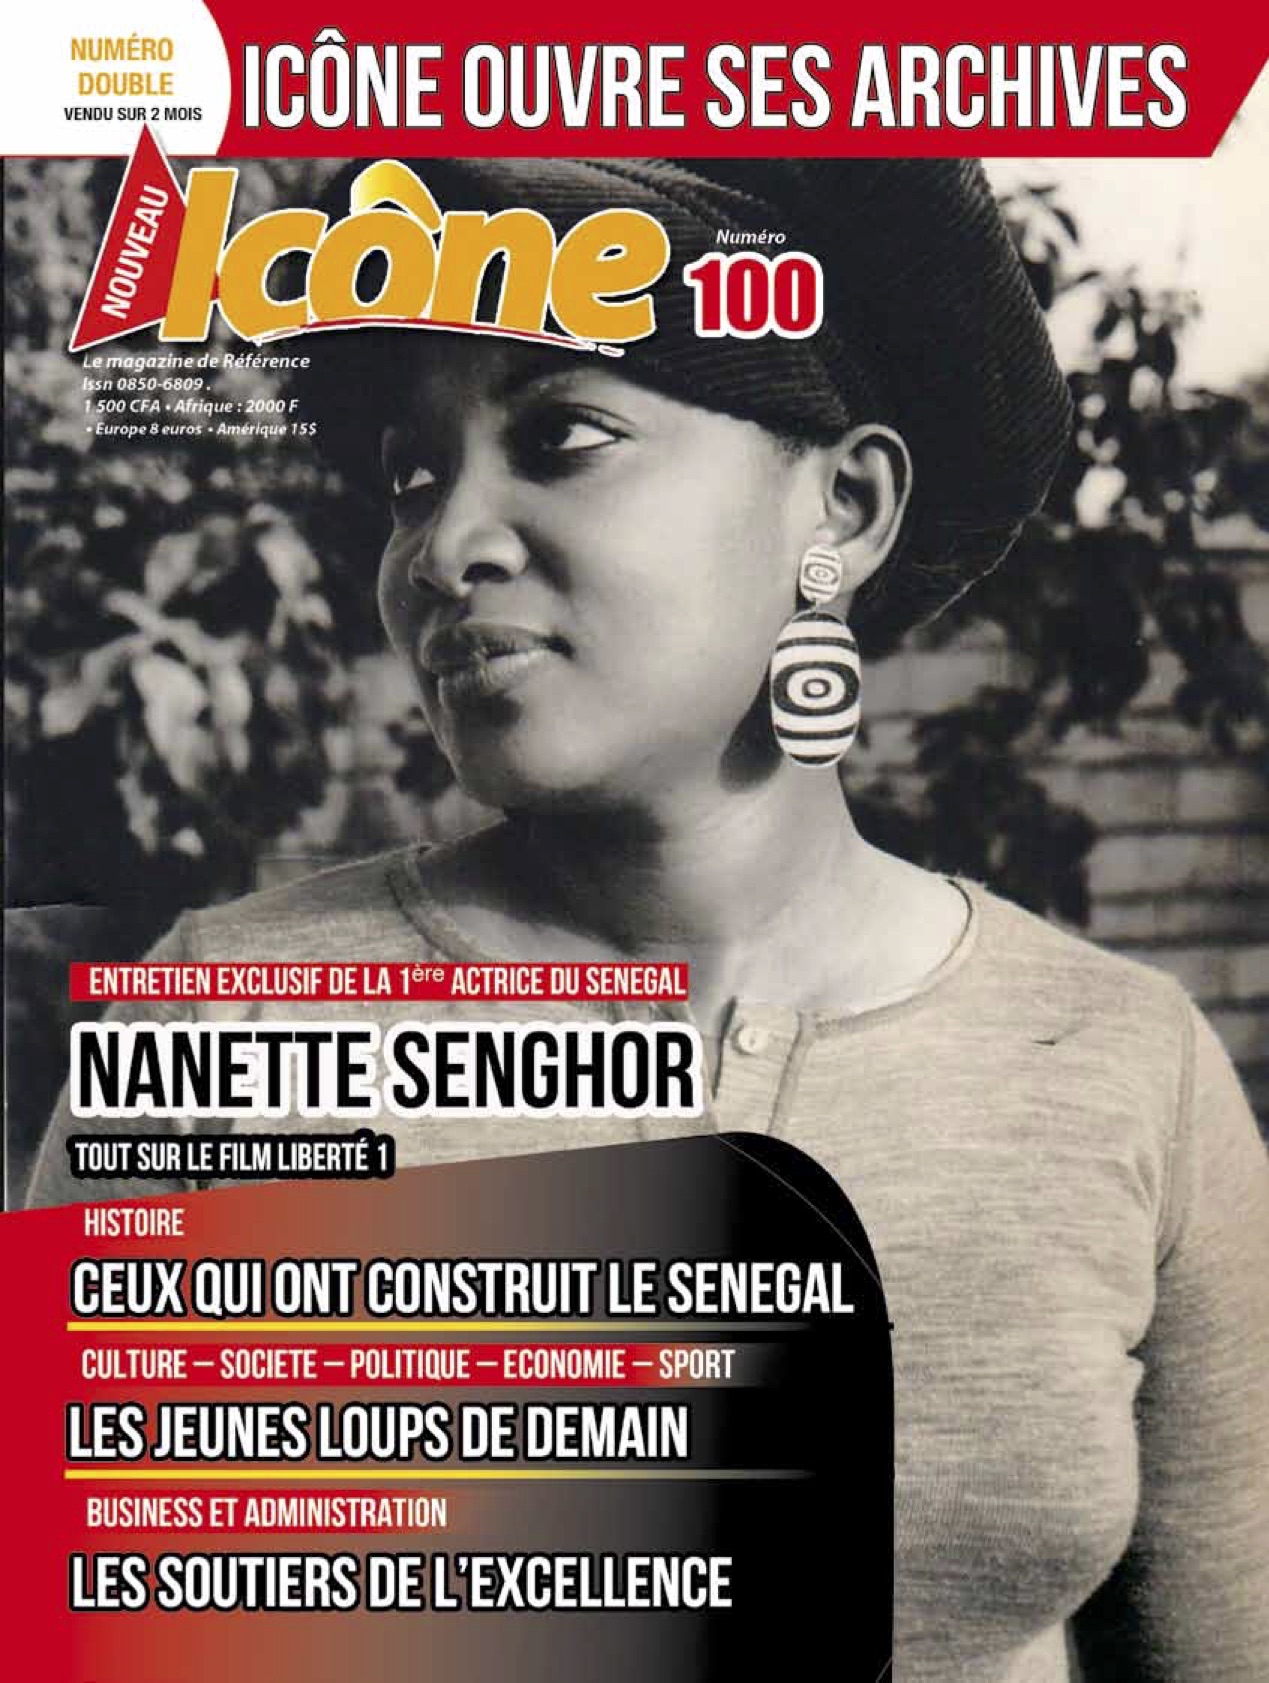 Le n° 100 de votre magazine Icone